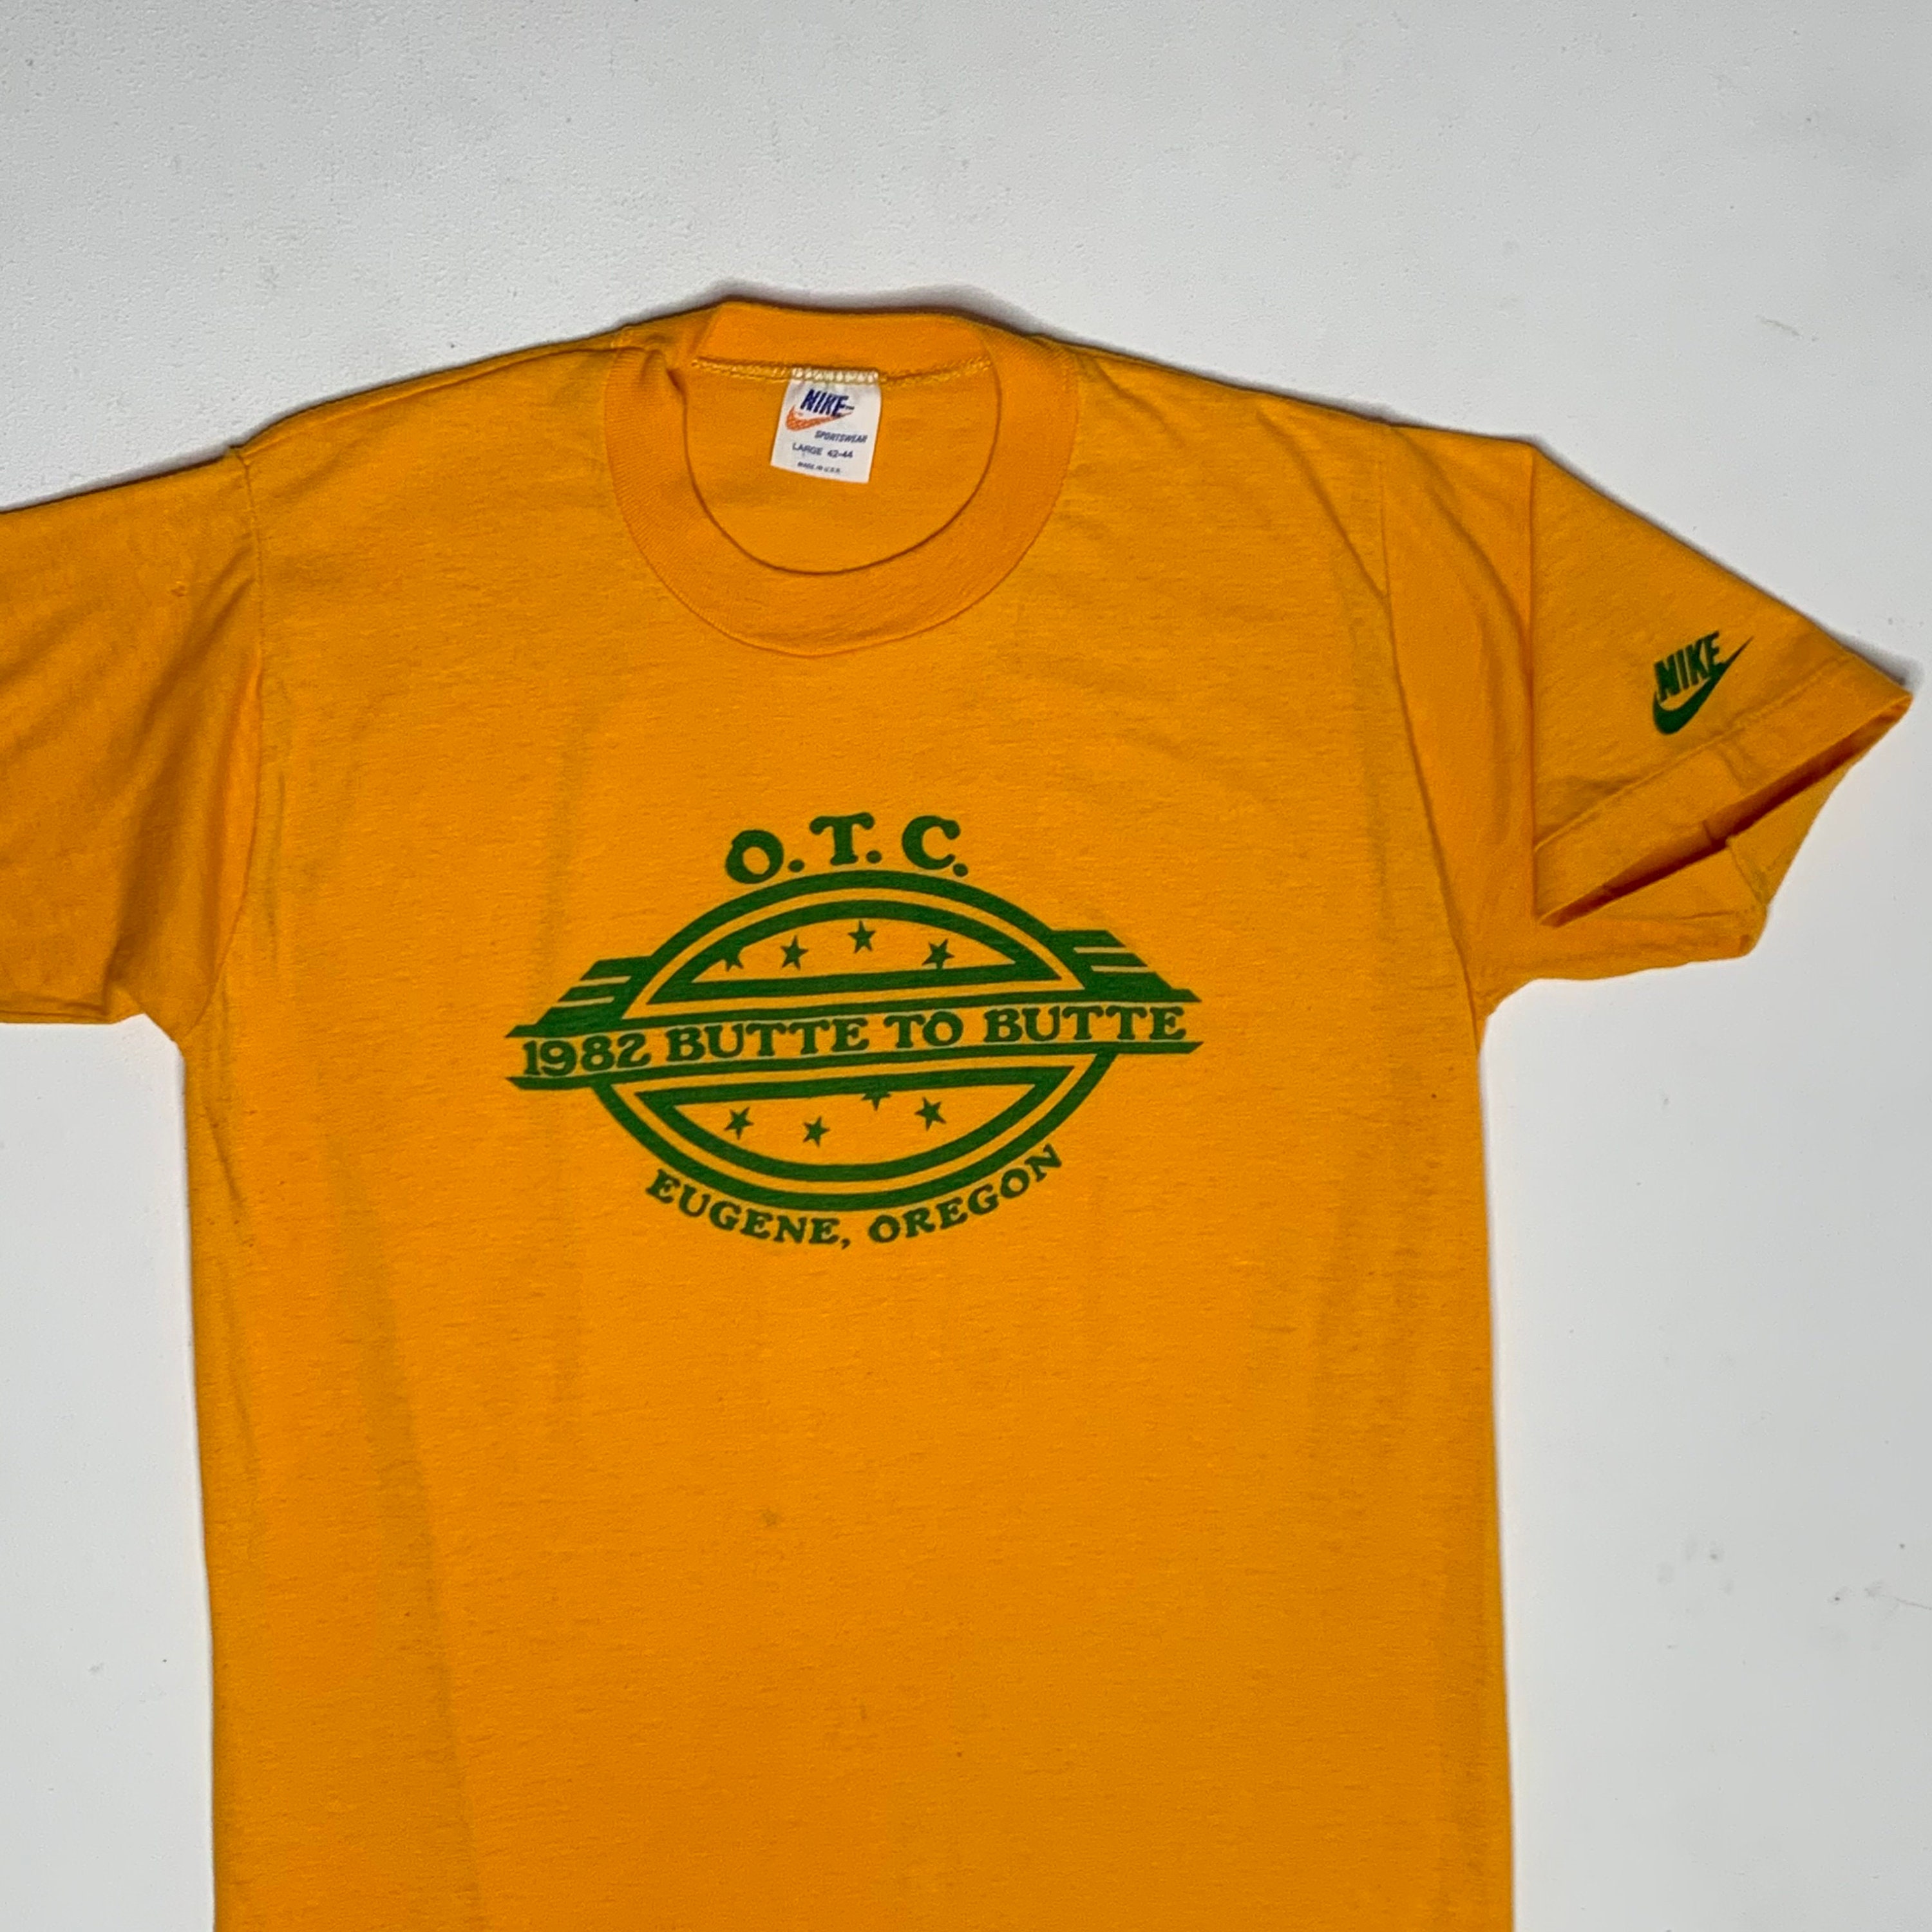 1982 Vintage Nike Butte to Butte Marathon T Shirt Eugene Pre - Etsy UK